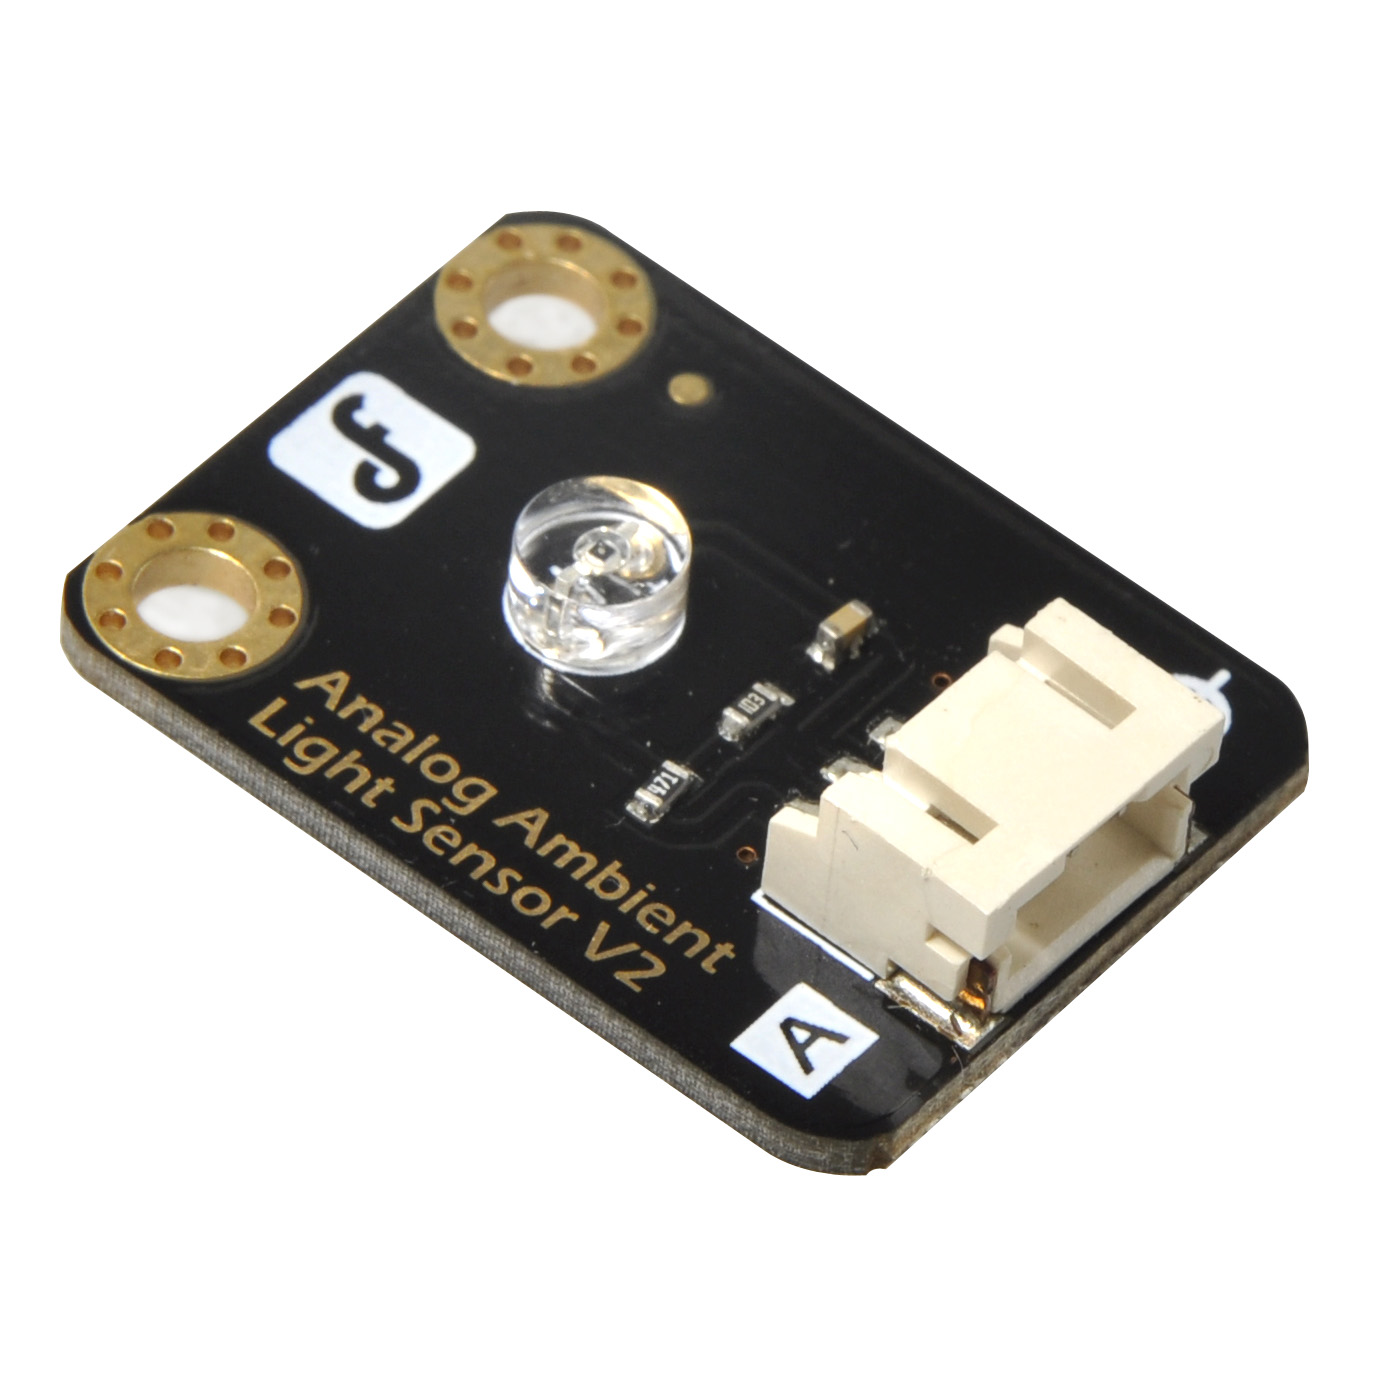 Analog Ambient Light Sensor For Arduino